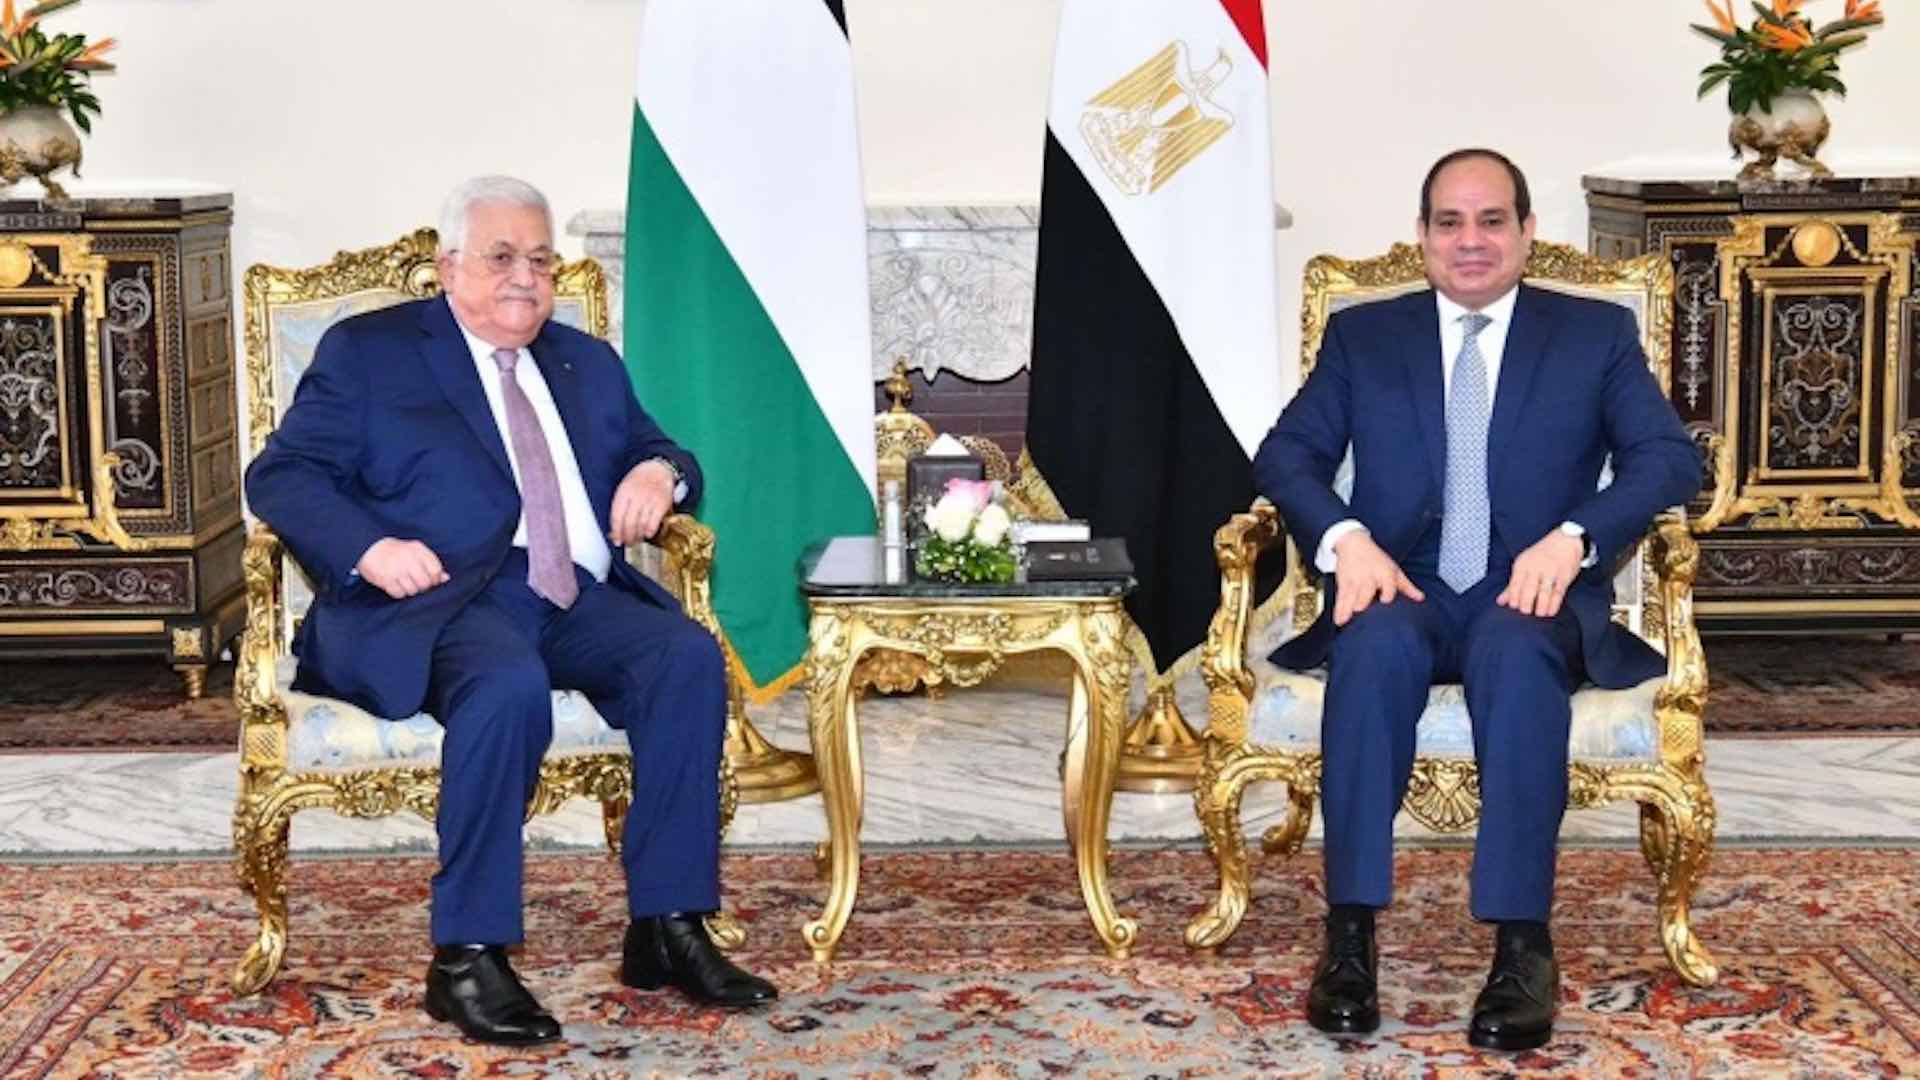 الرئيس المصري يبحث مع نظيره الفلسطيني تنسيق المواقف والرؤى لتحقيق السلام الشامل